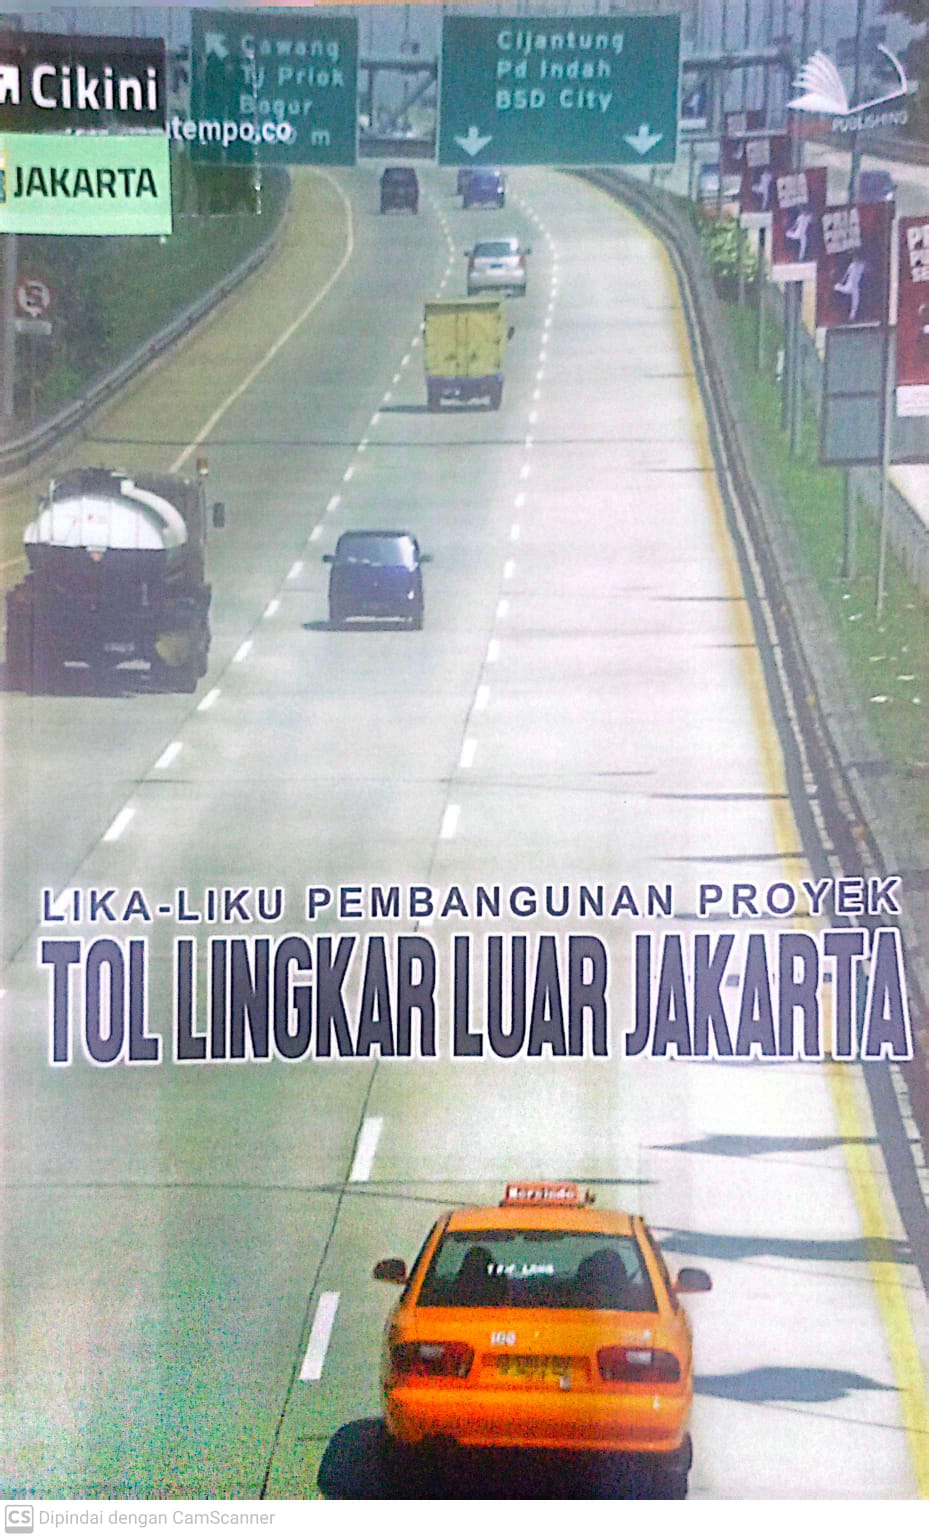 Lika-liku pembangunan proyek tol lingkar luar Jakarta